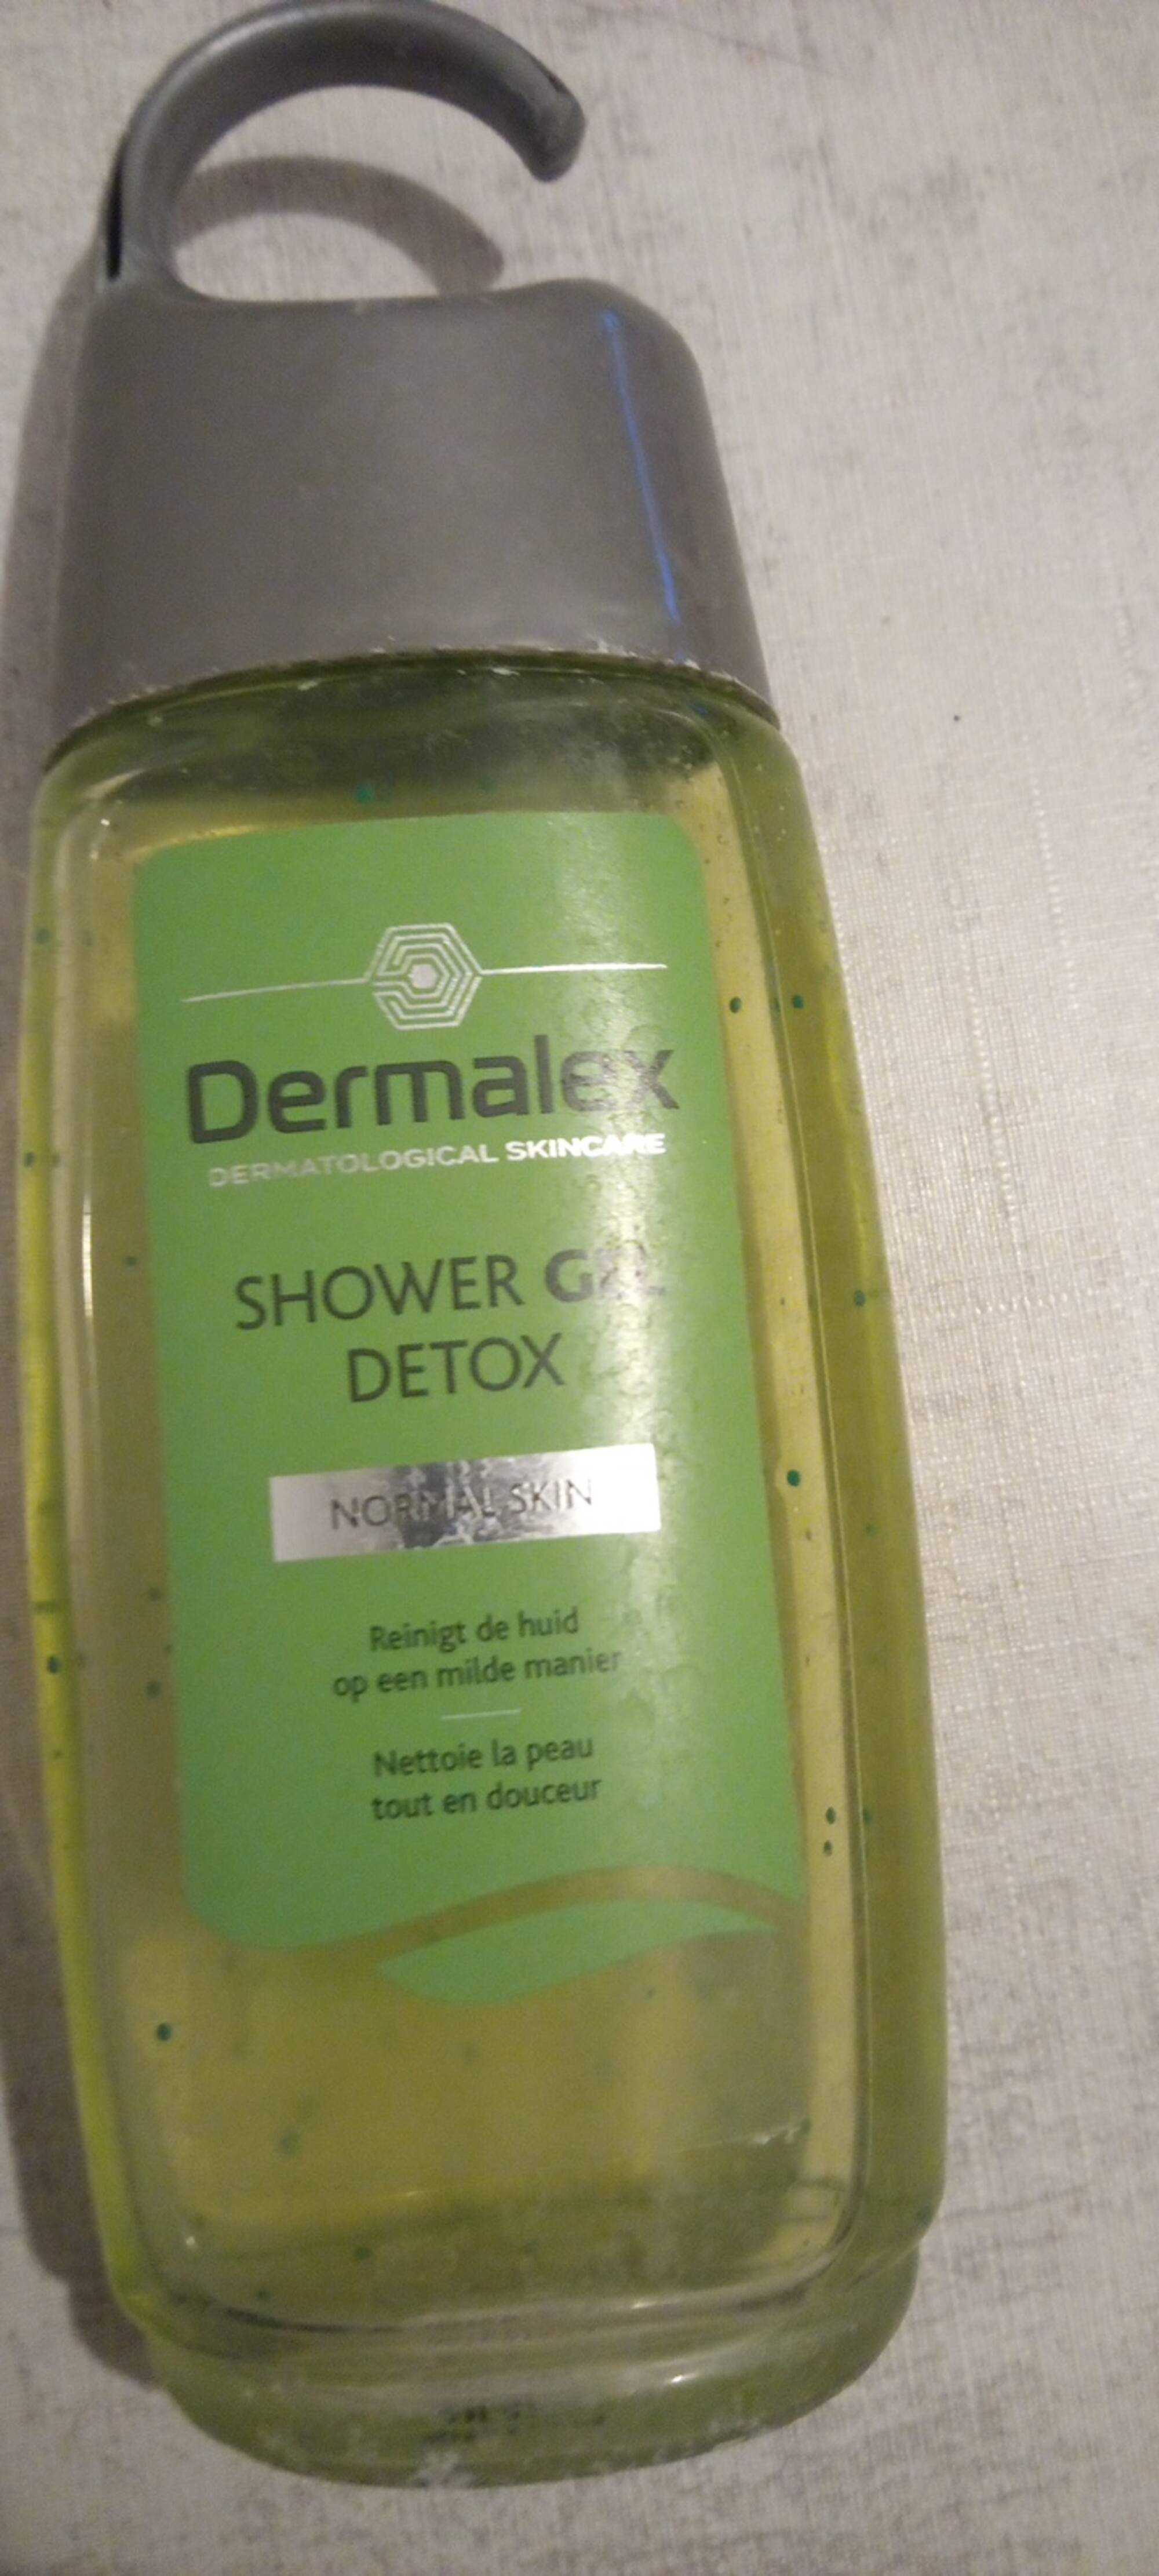 DERMALEX - Shower gel detox 